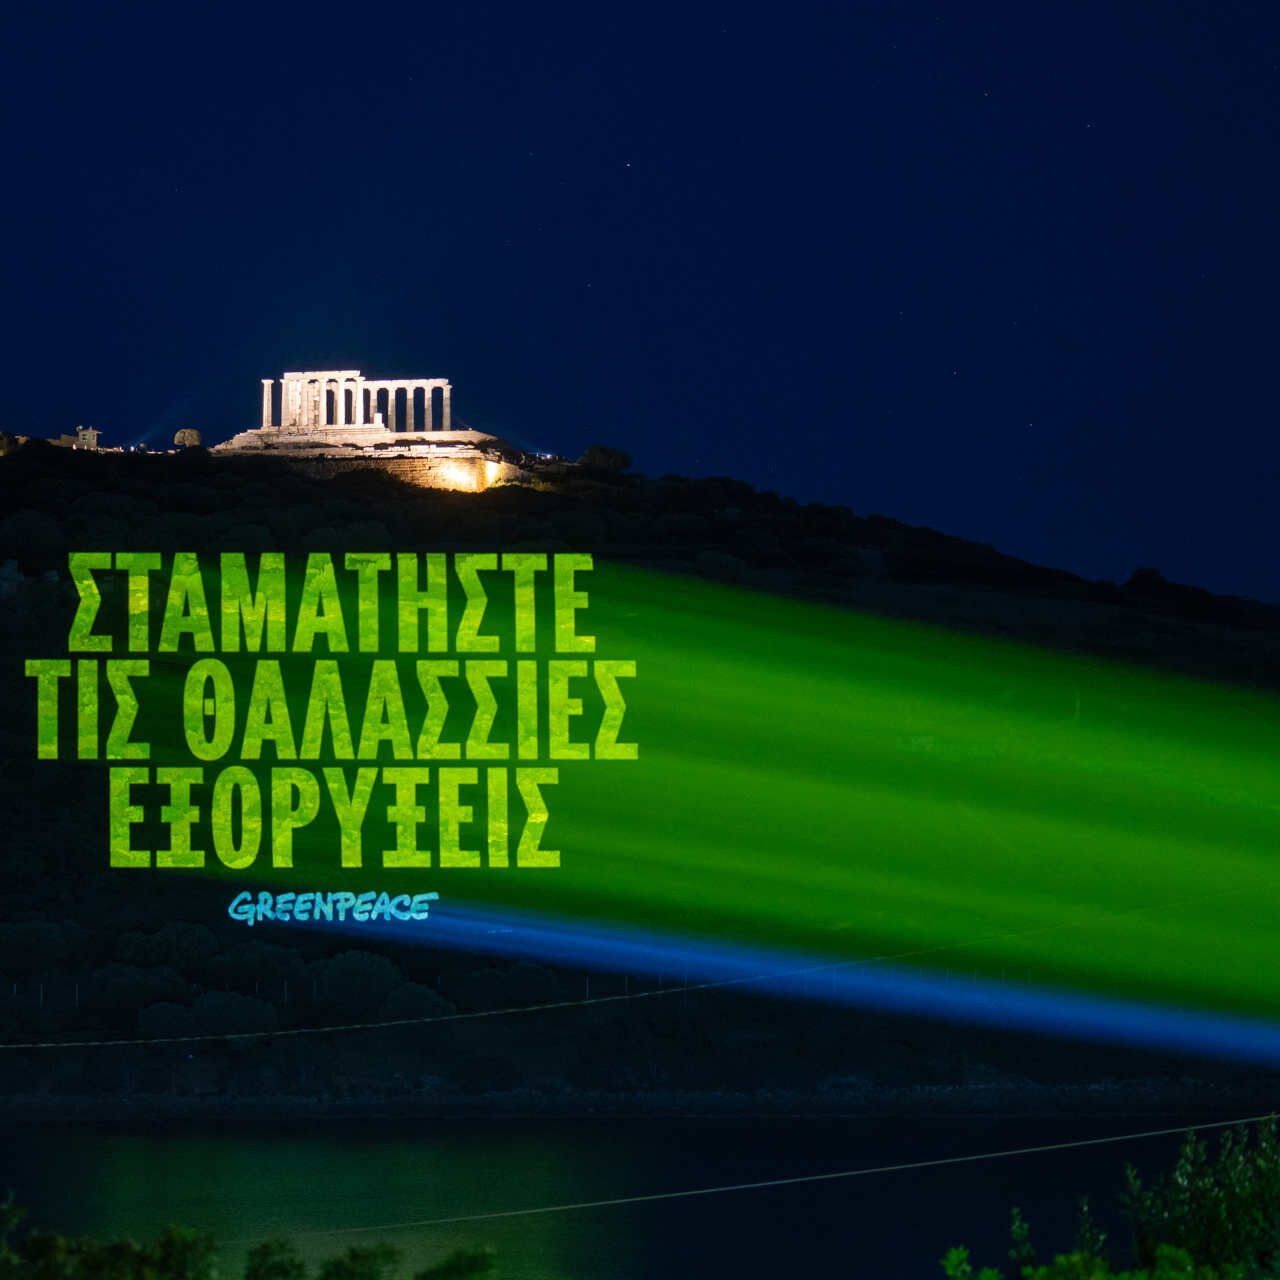 ग्रीस: ग्रीक में संदेश जो पढ़ा जाता है